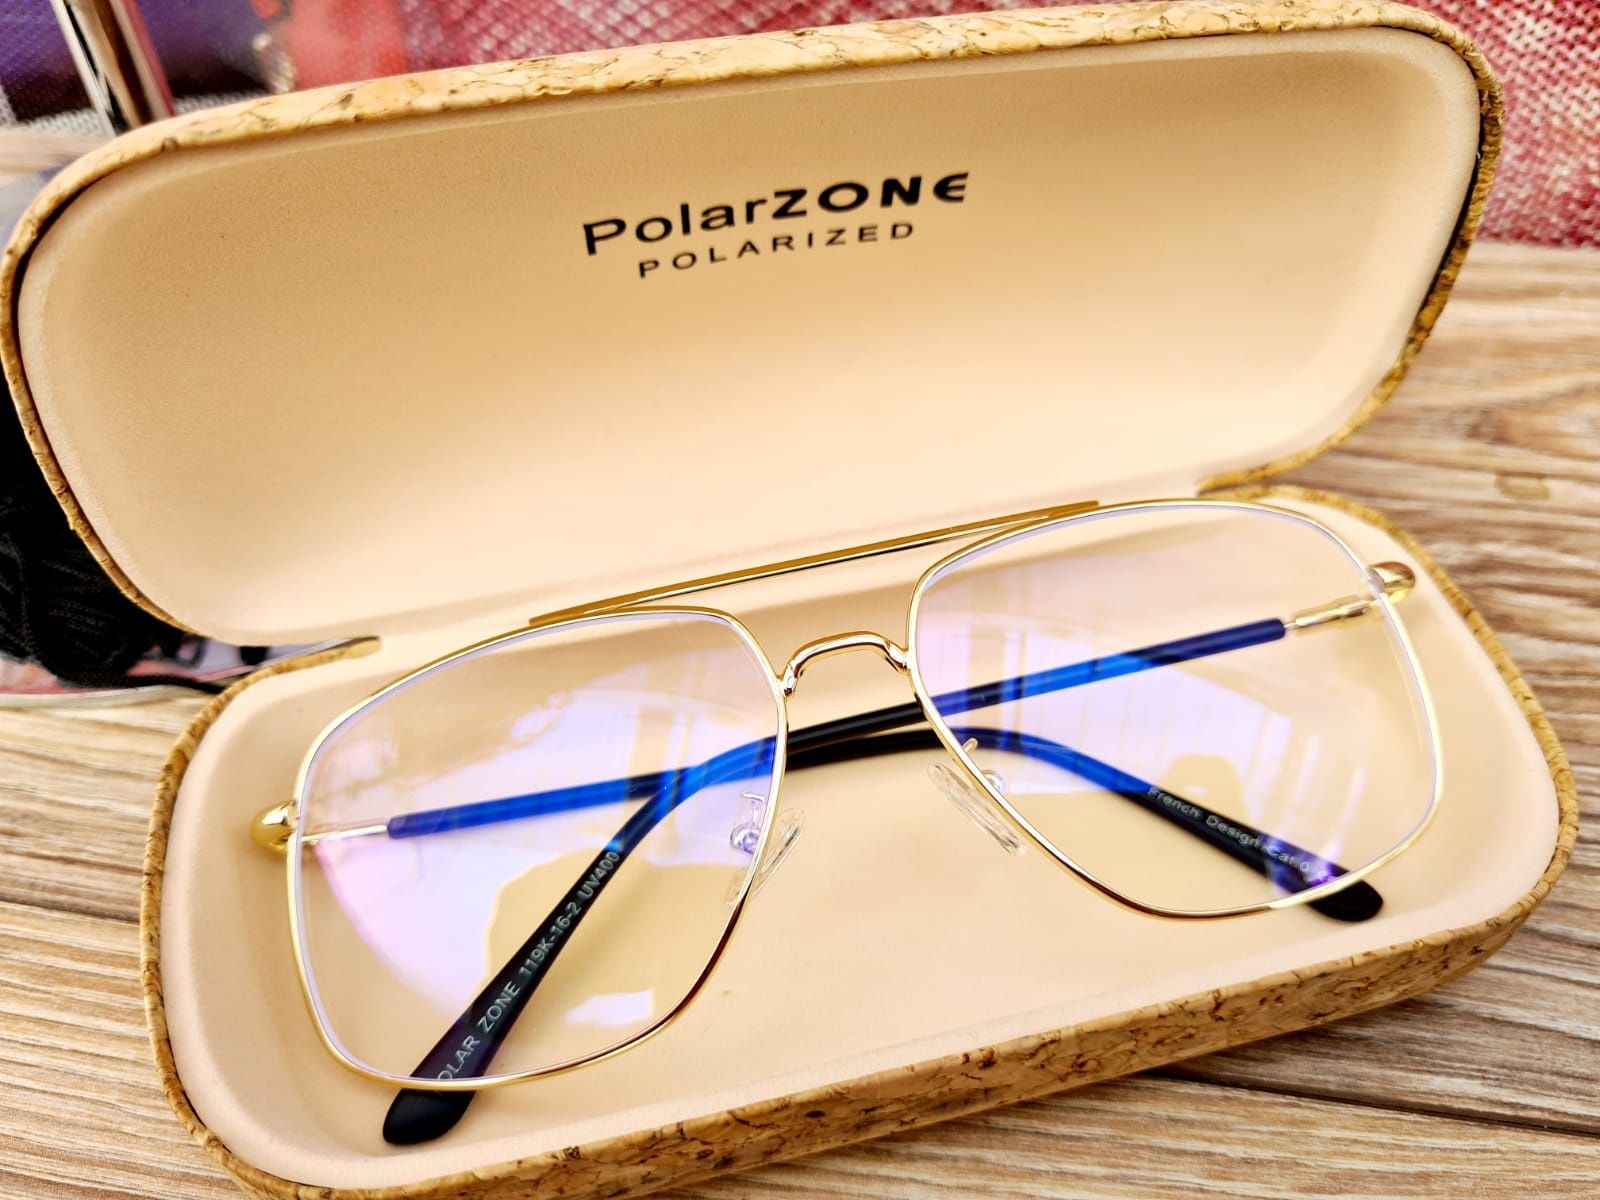 Męskie okulary do komputera zerówki marki Polarzone nowe